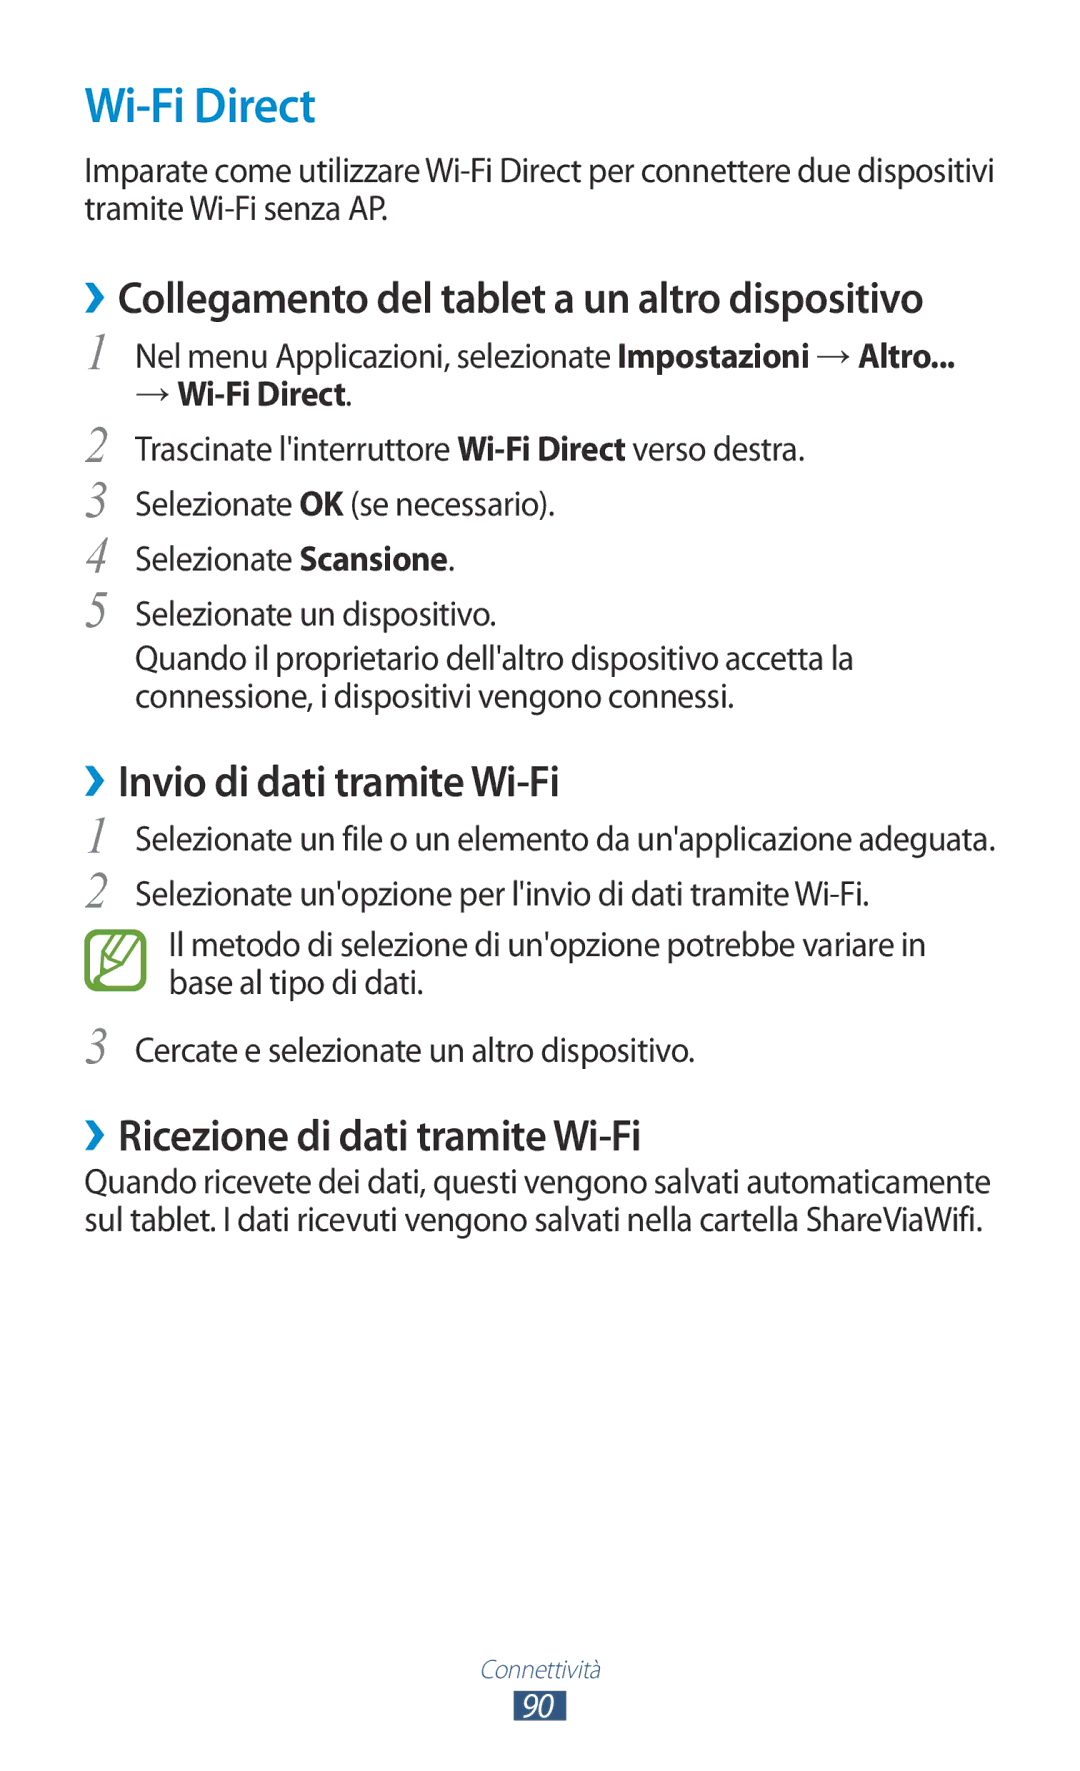 Samsung GT-P7500FKDITV manual Wi-Fi Direct, ››Collegamento del tablet a un altro dispositivo, ››Invio di dati tramite Wi-Fi 